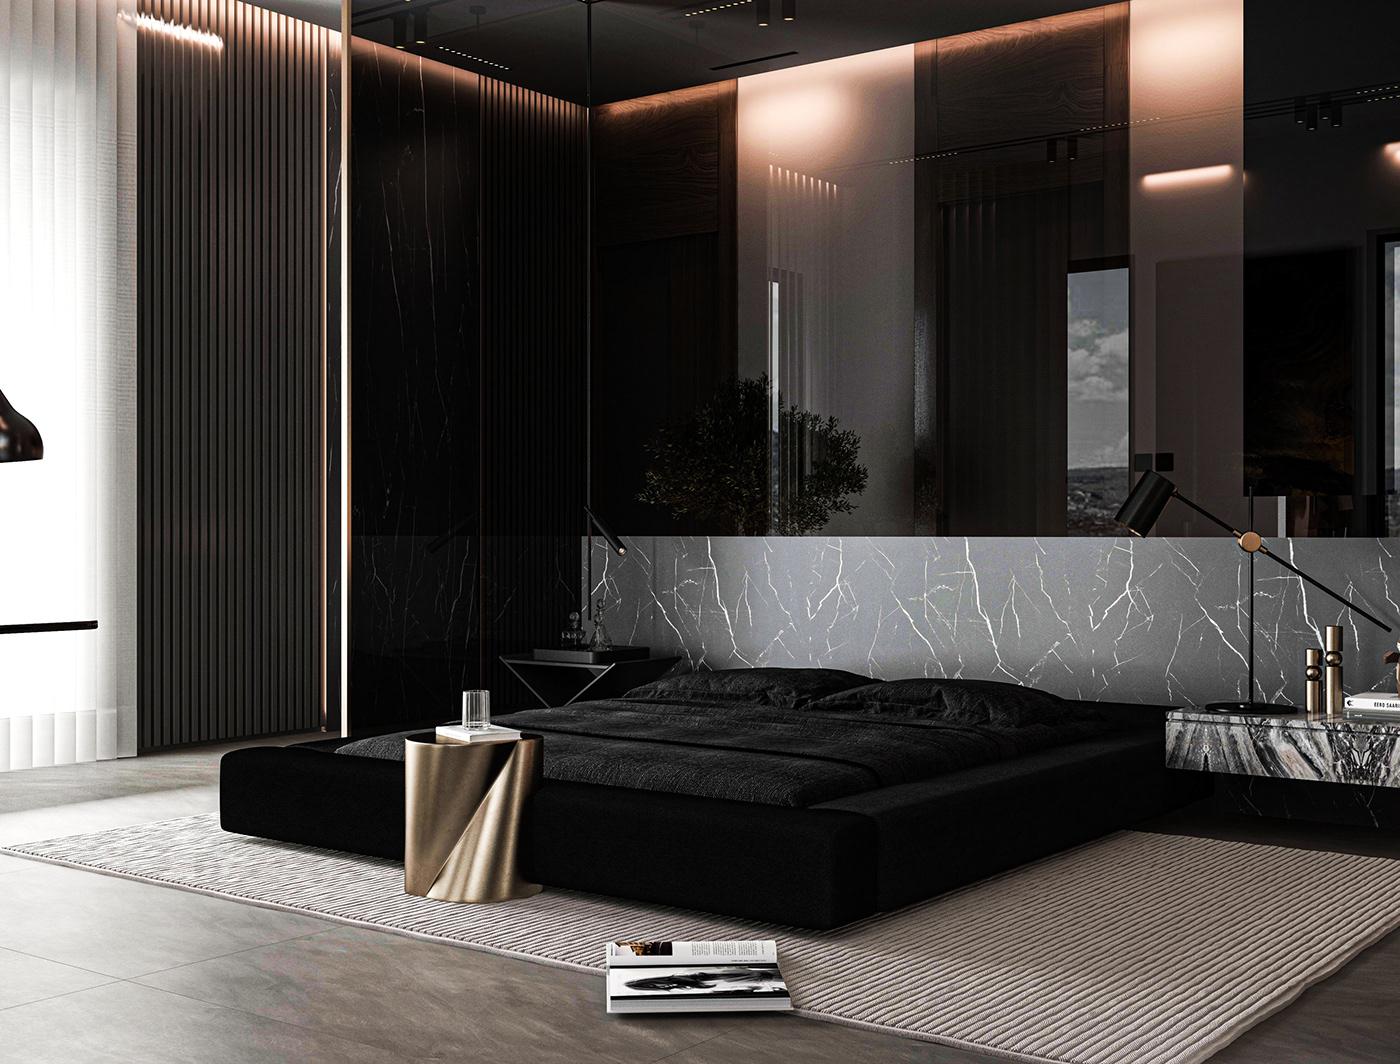 3D 3ds max visualization interior design  modern architecture Render archviz